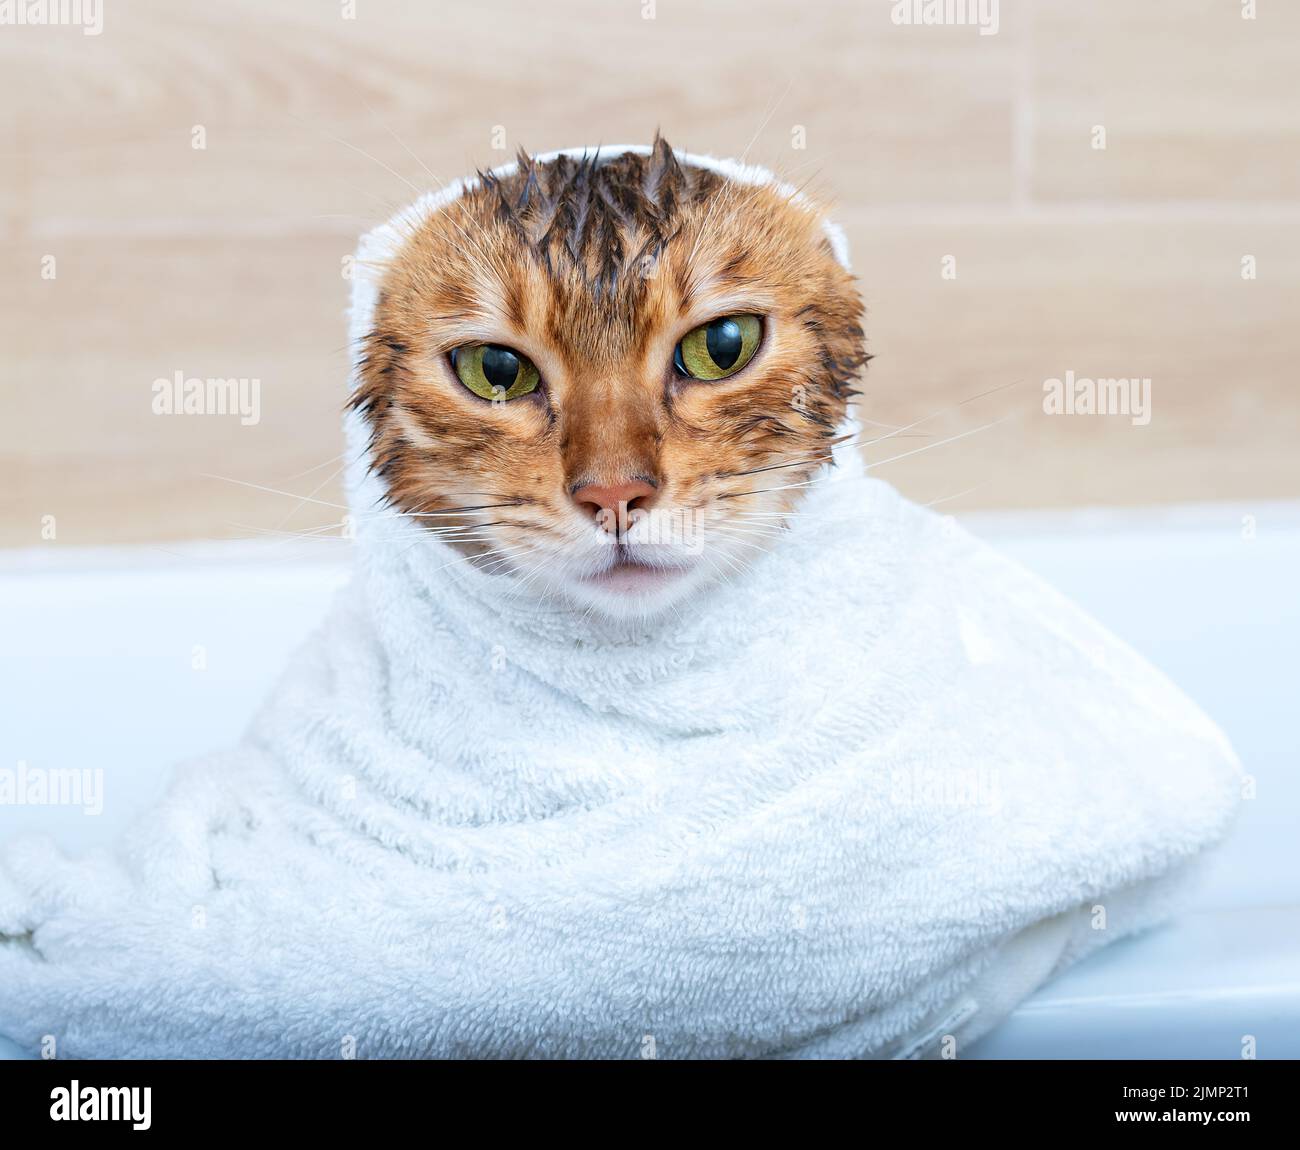 Divertente gatto bengala bagnato dopo un bagno, avvolto in un asciugamano bianco Foto Stock